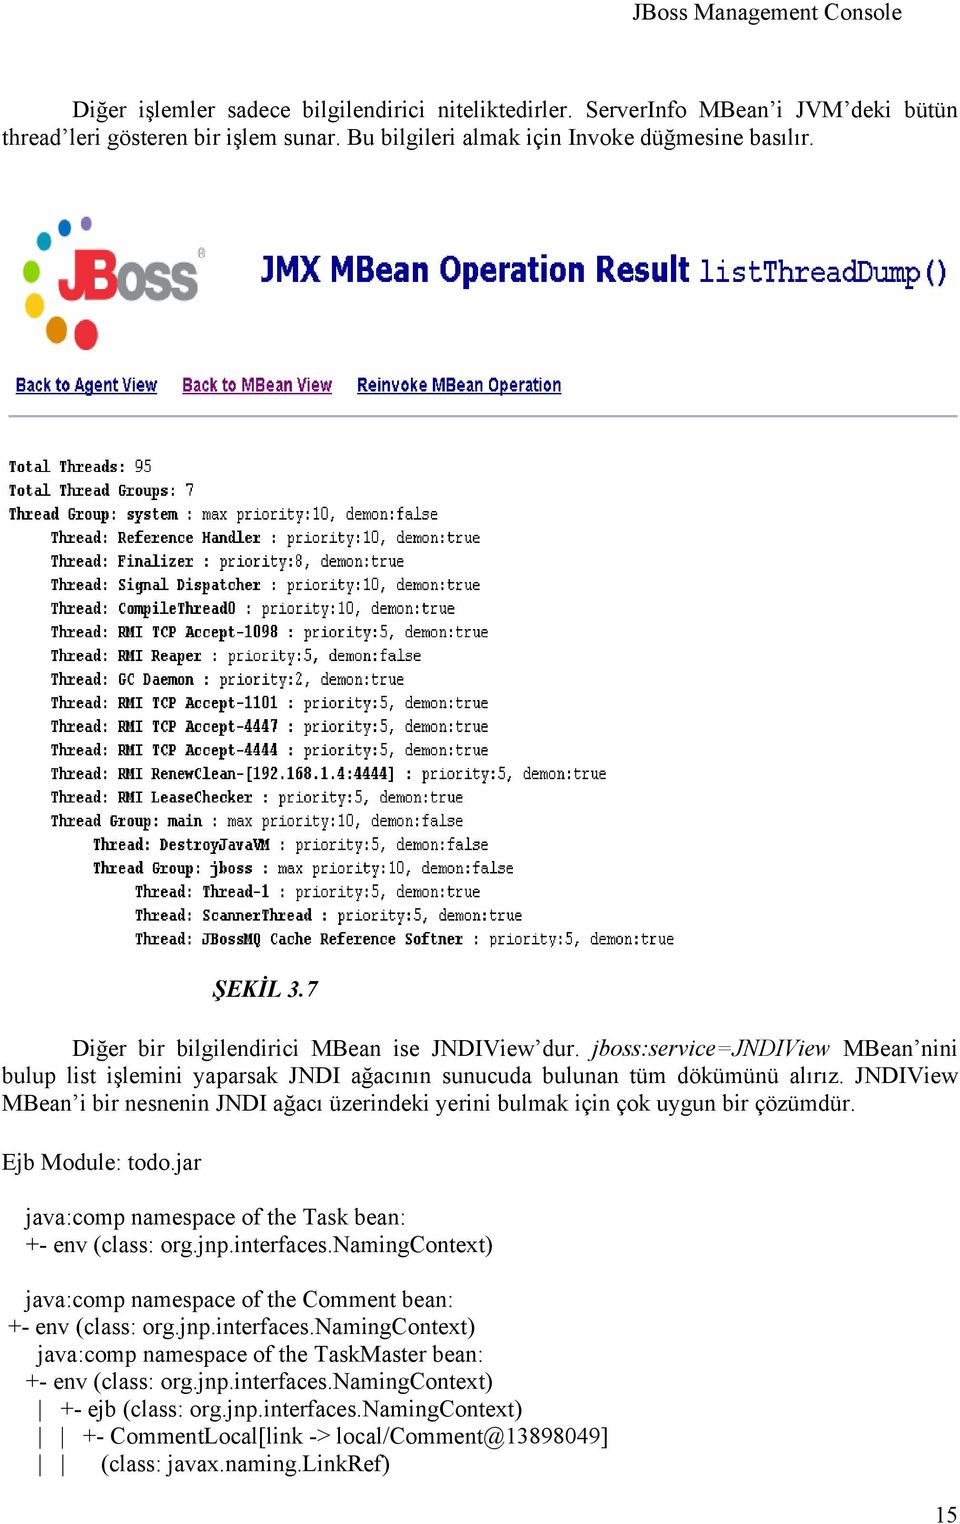 JNDIView MBean i bir nesnenin JNDI ağacı üzerindeki yerini bulmak için çok uygun bir çözümdür. Ejb Module: todo.jar java:comp namespace of the Task bean: +- env (class: org.jnp.interfaces.